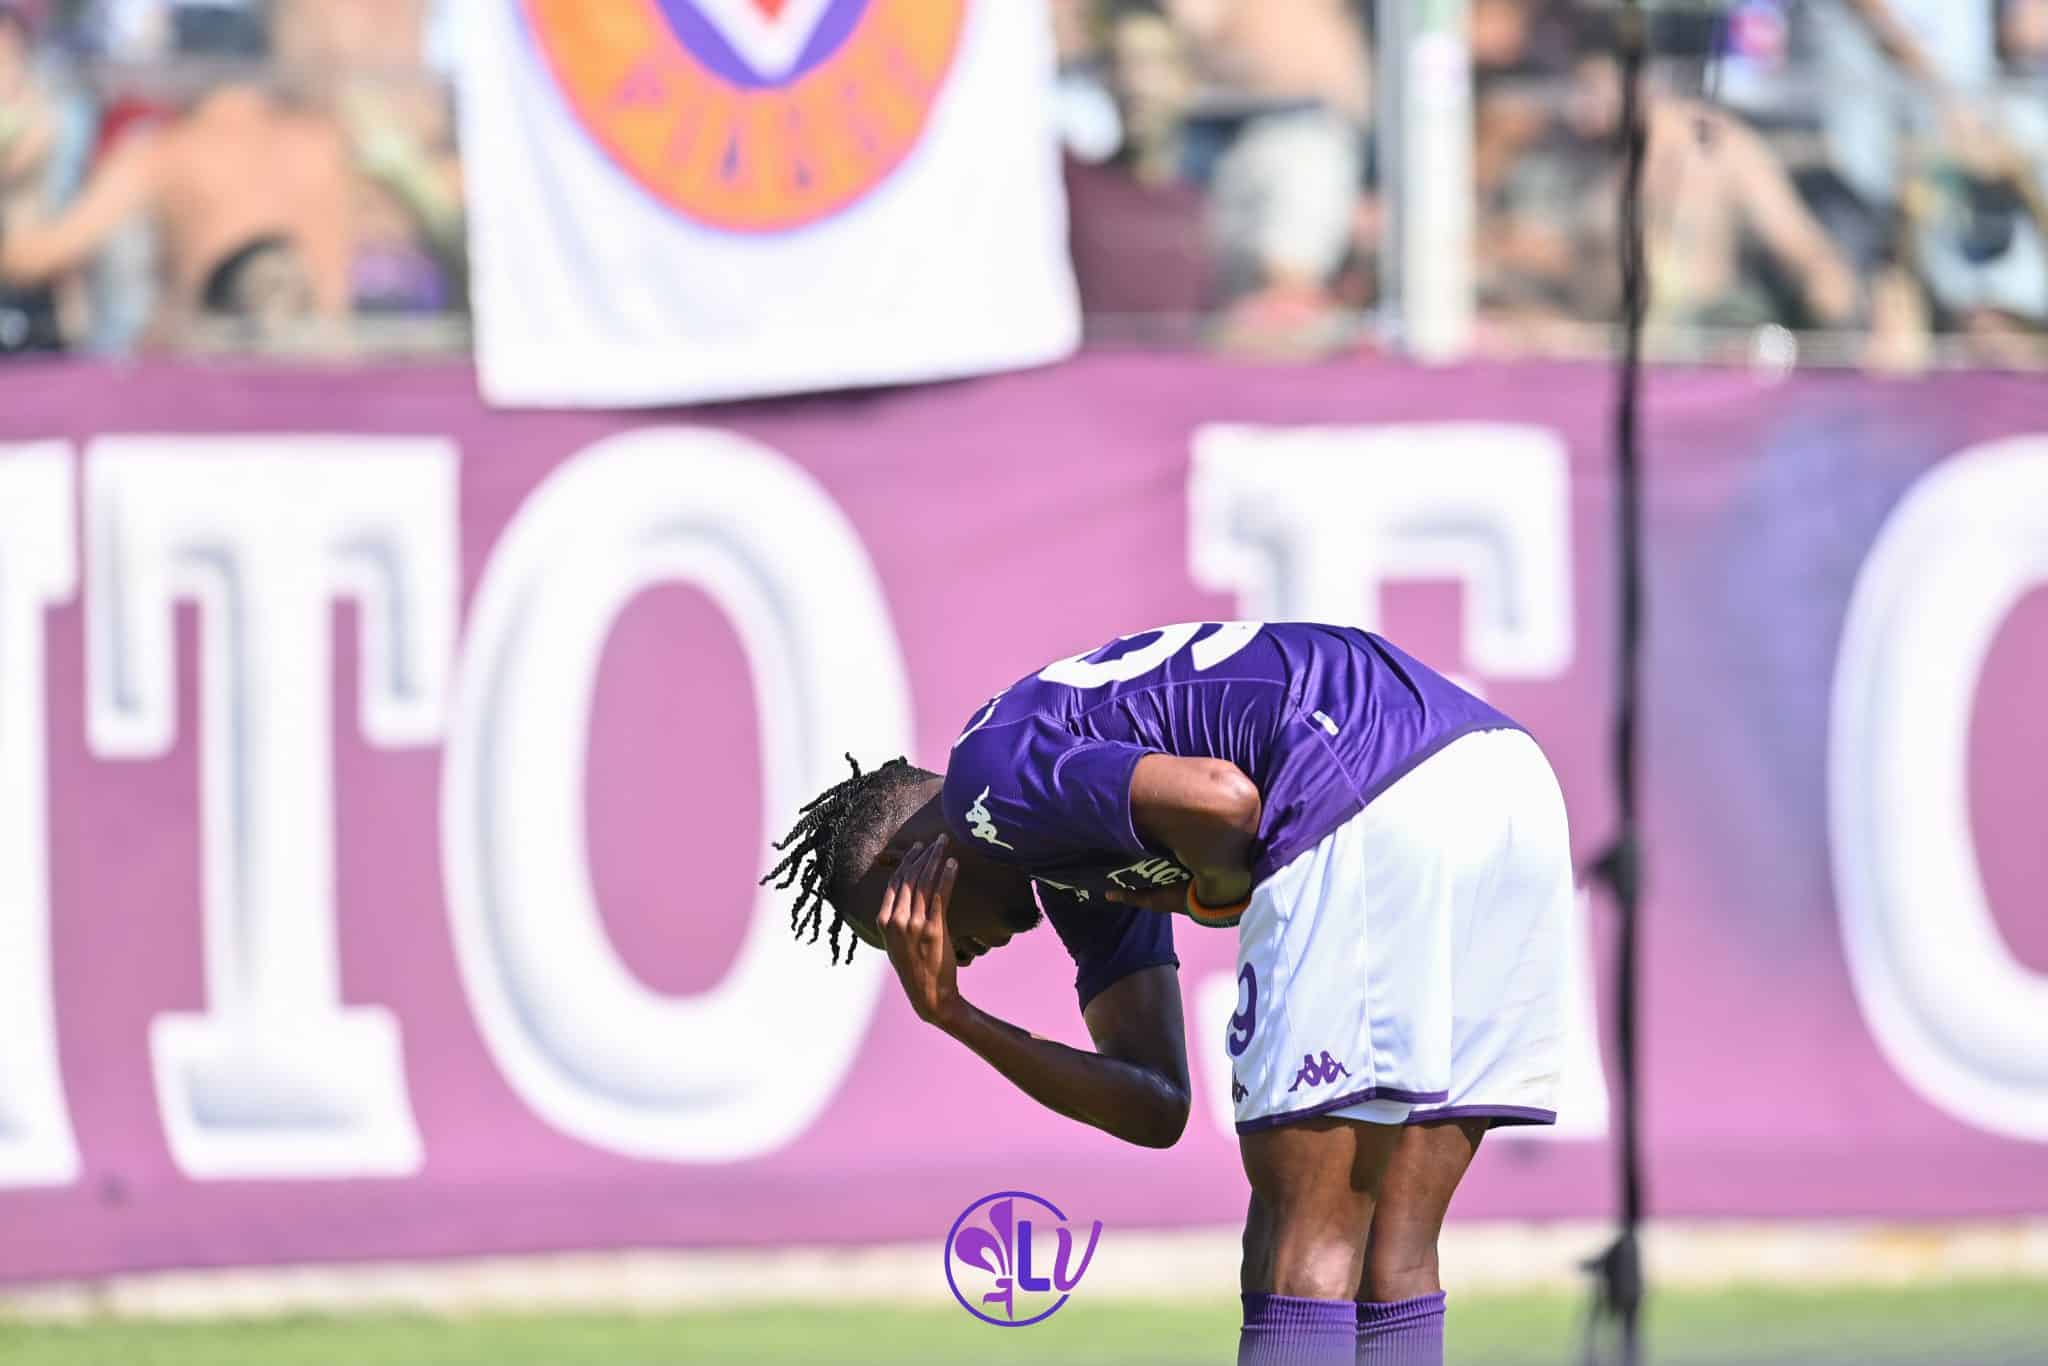 Fiorentina-Juve termine 1-1.  Le penalty sauvé par Perin de Jovic pèse comme un rocher